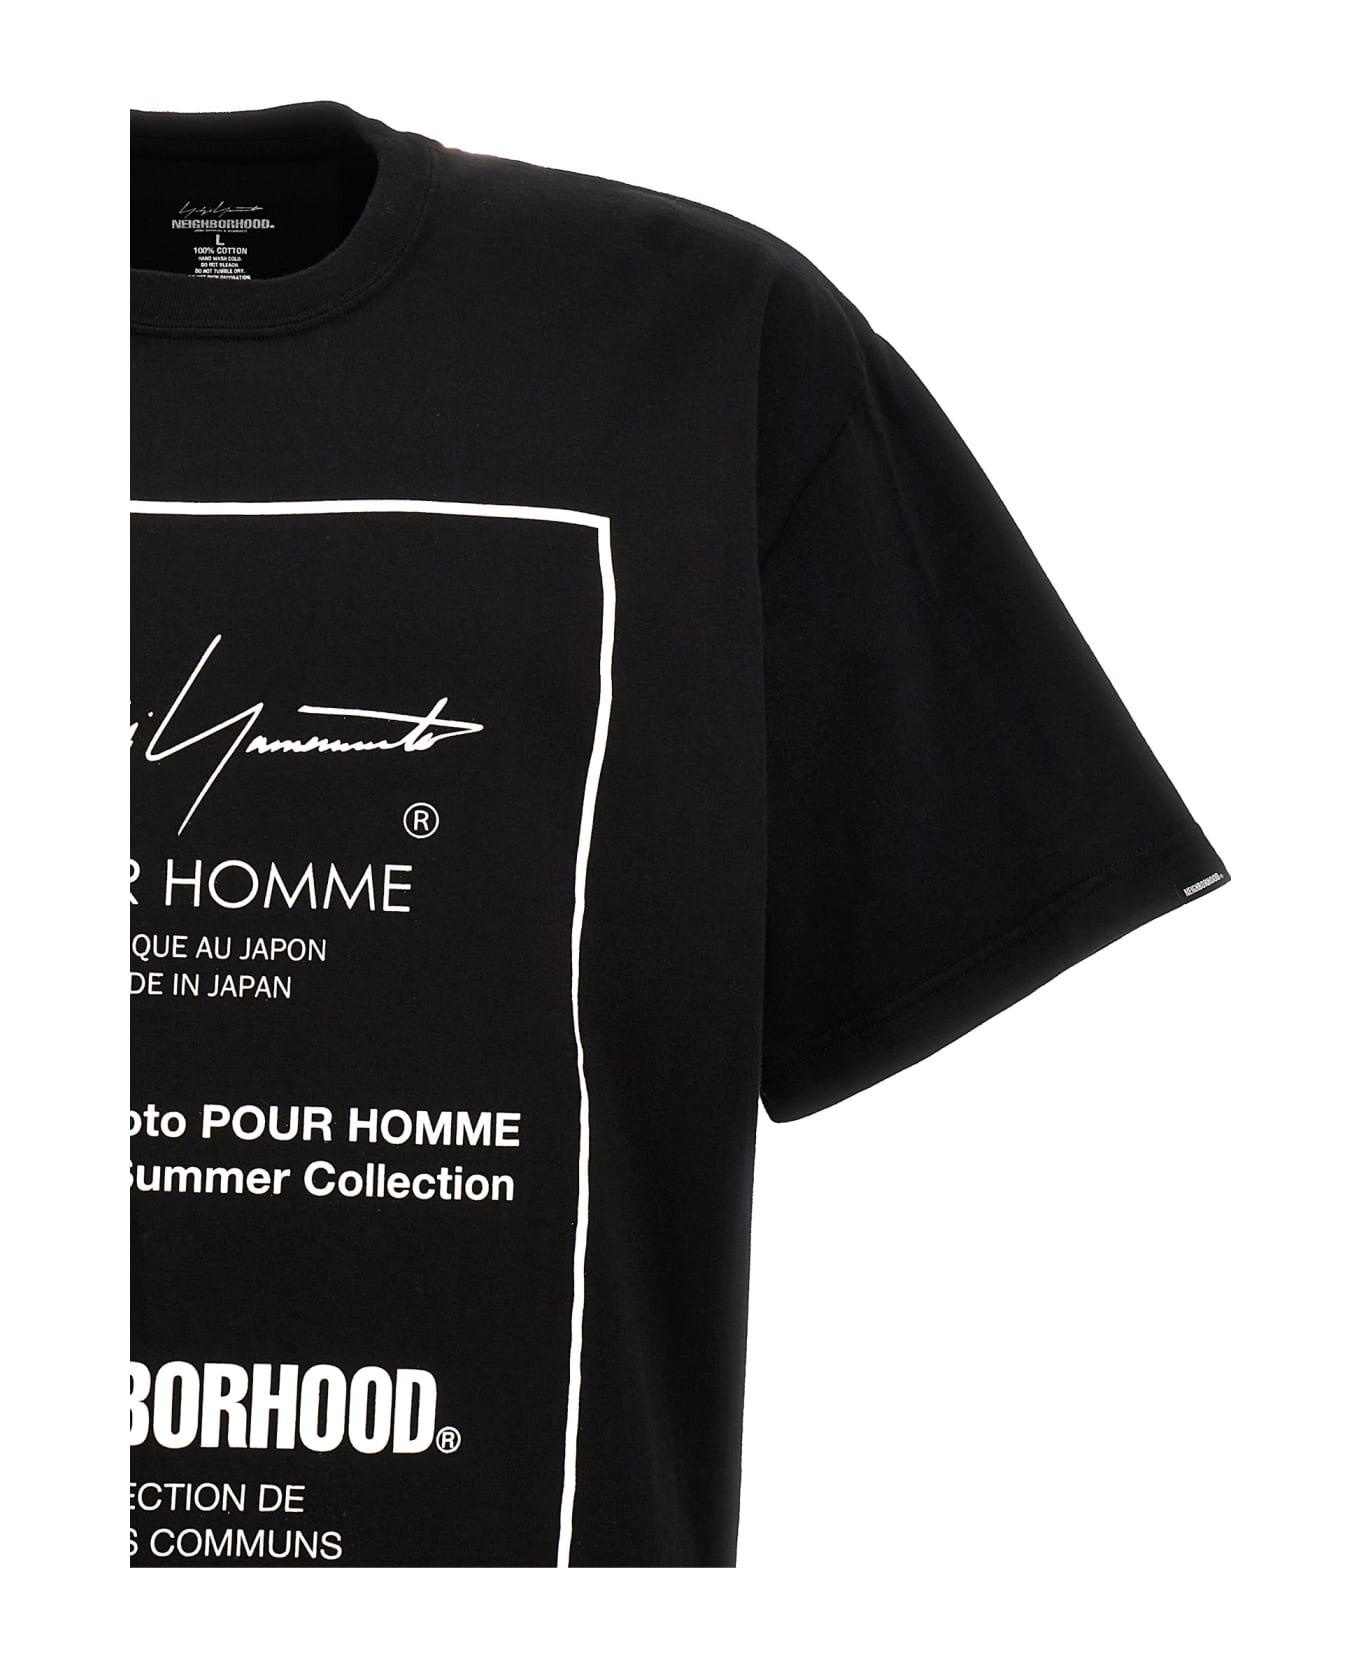 Yohji Yamamoto 'neighborhood' T-shirt - White/Black